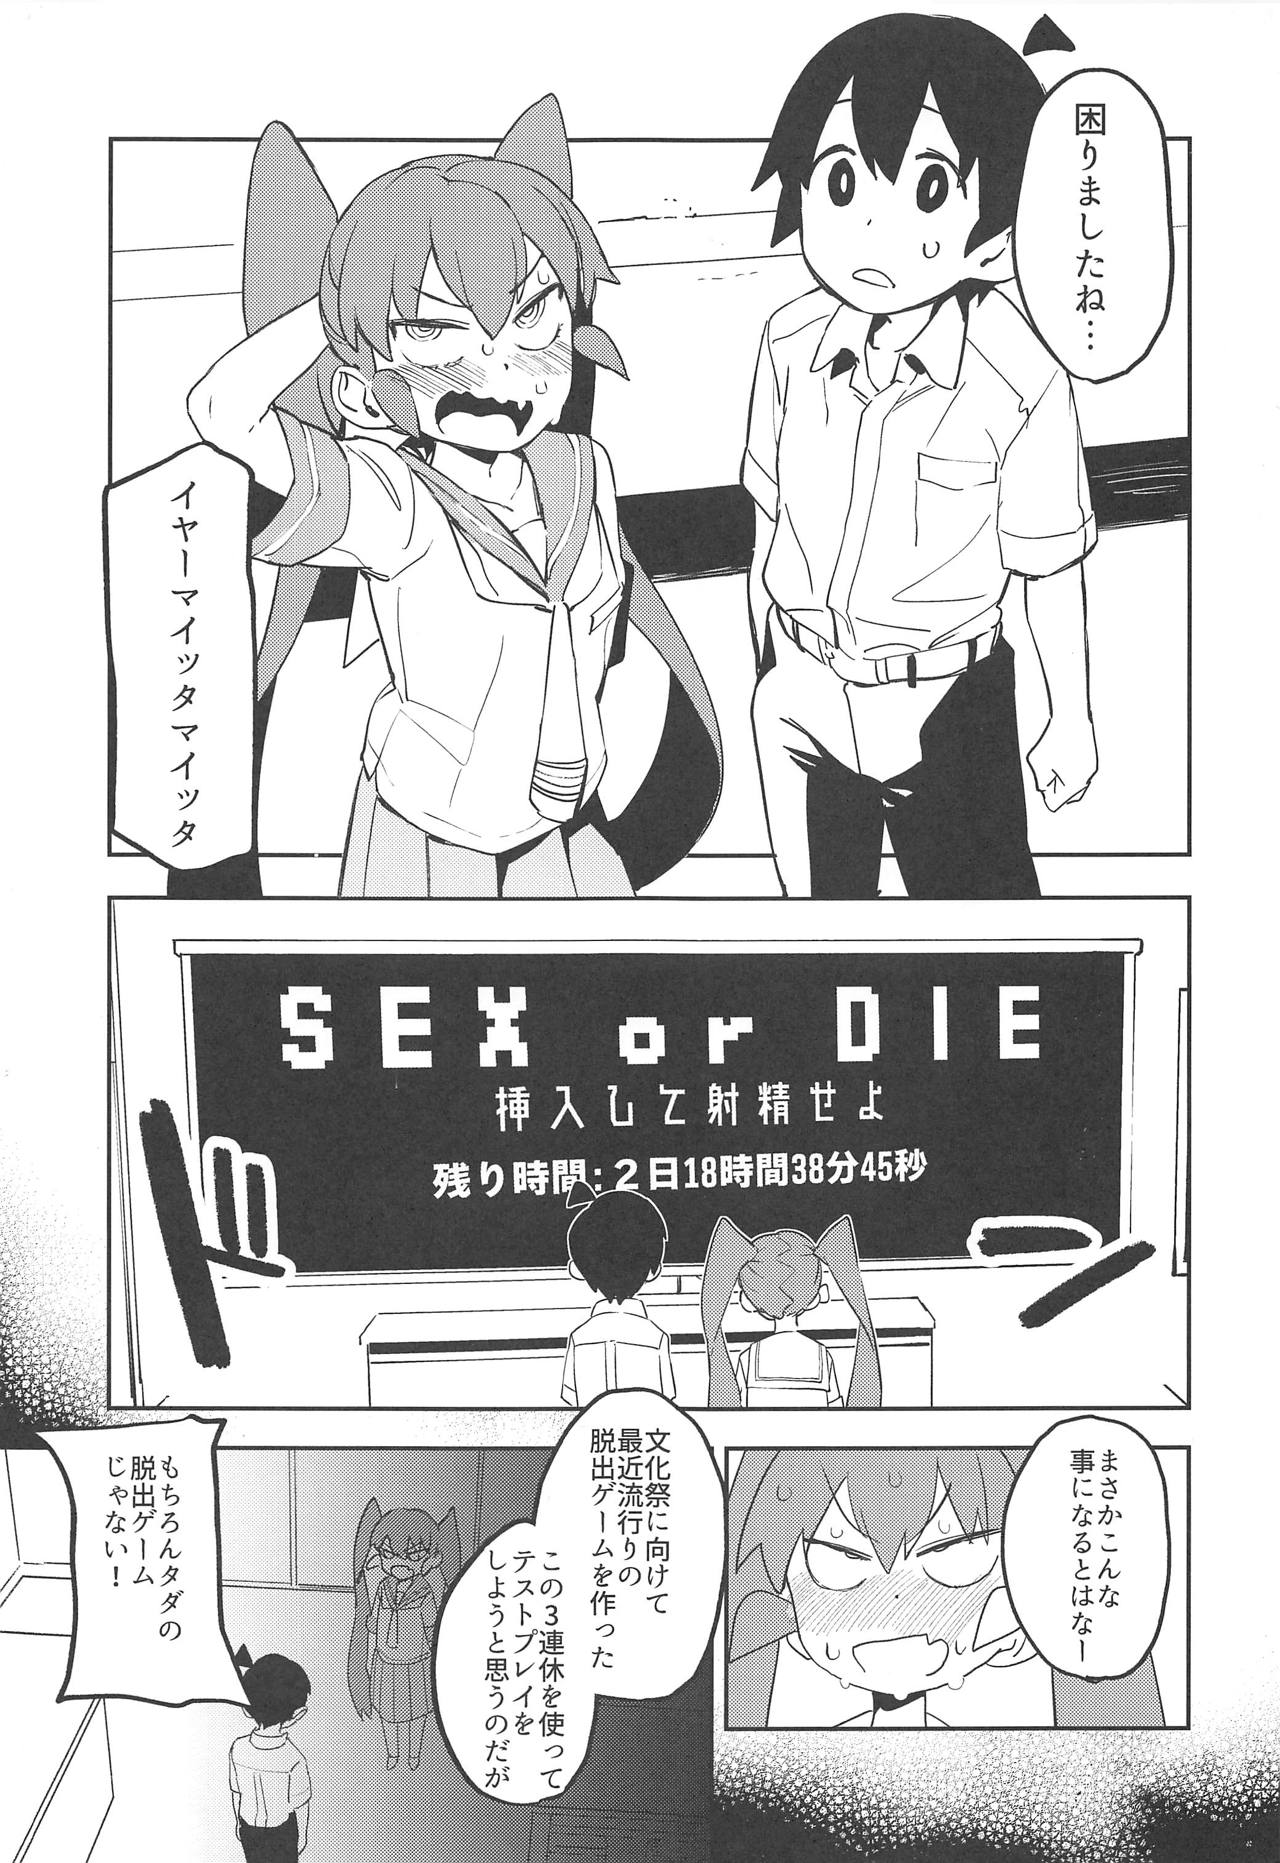 【上野さんは不器用】セックスしないと出られない部屋に閉じ込められた田中と上野さんは…。の画像2枚目